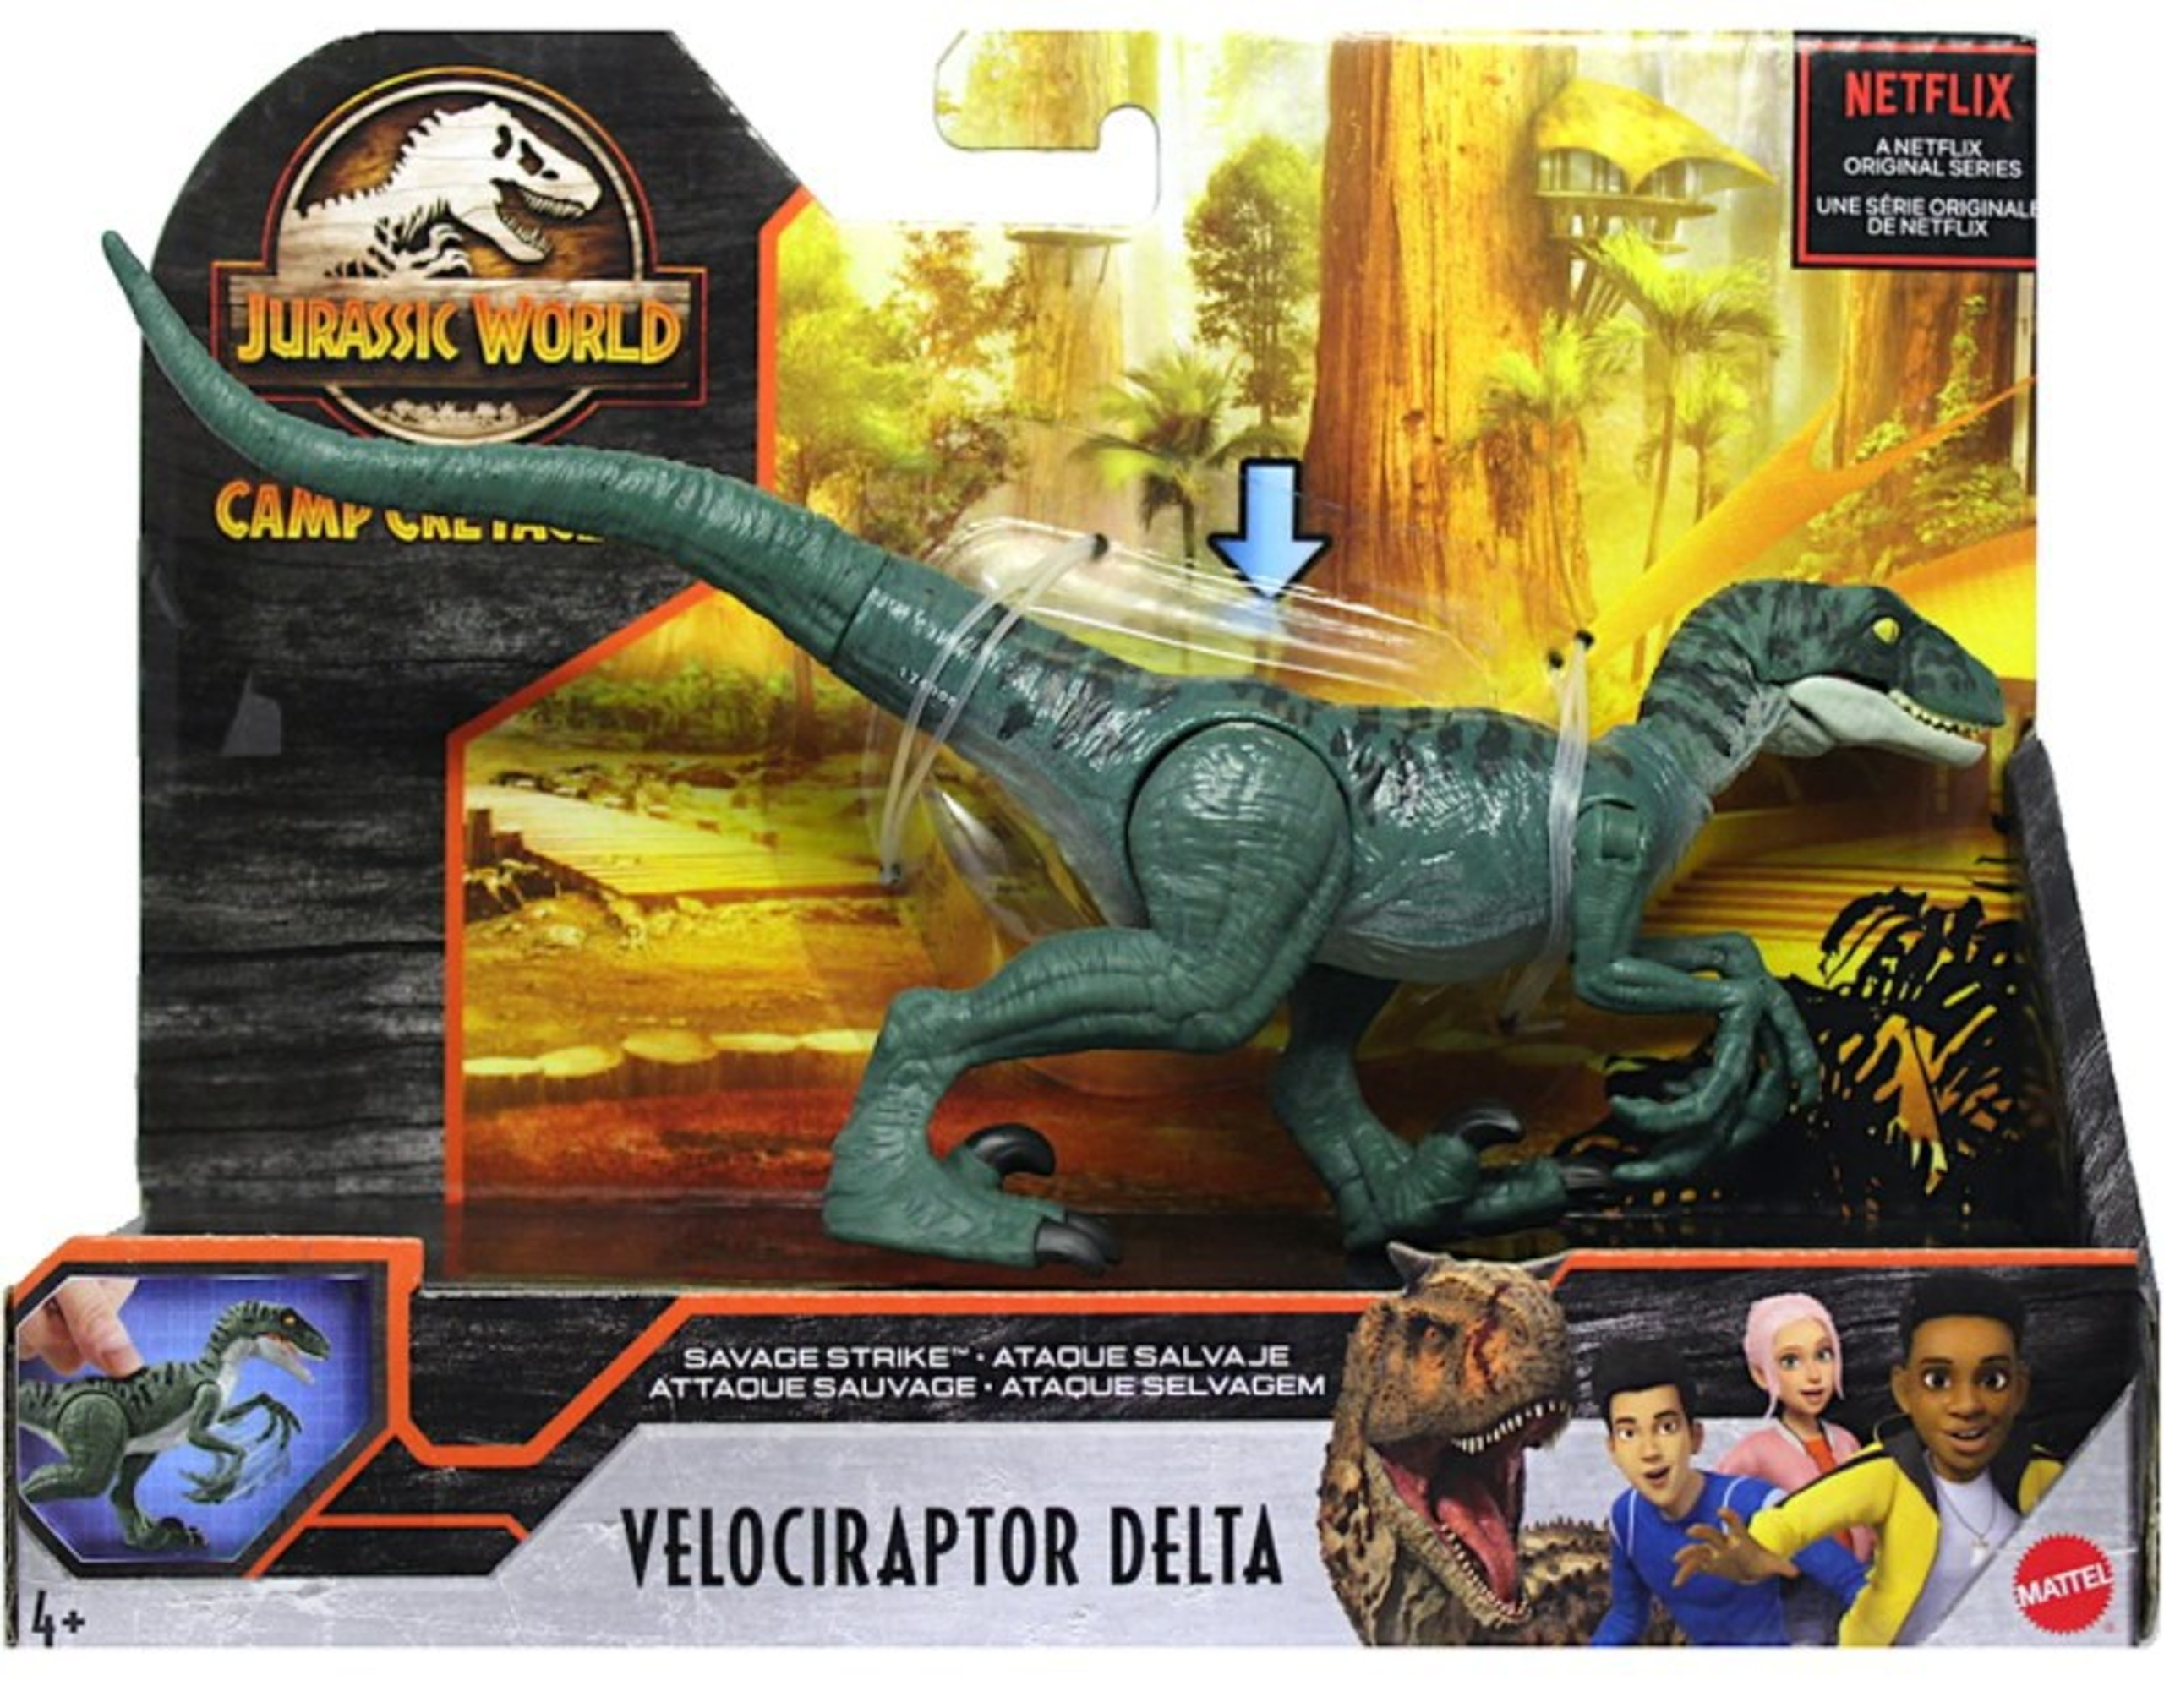 Jurassic World Camp Cretaceous Velociraptor Delta Action Figure Savage Strike Mattel Toywiz 